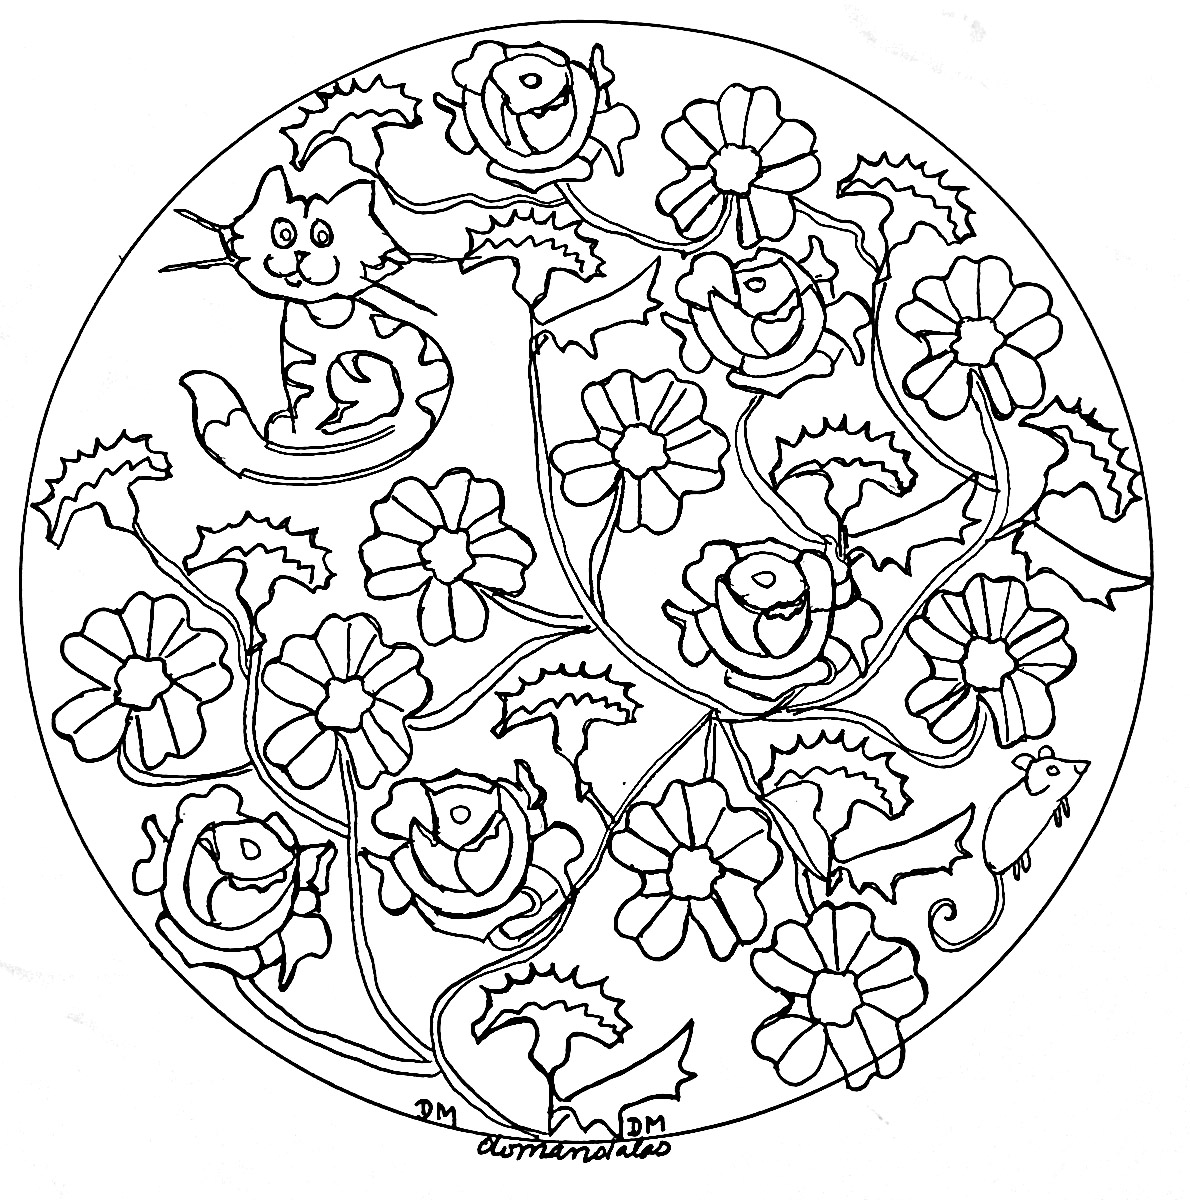 Mandala roses and cat, Artist : Domandalas